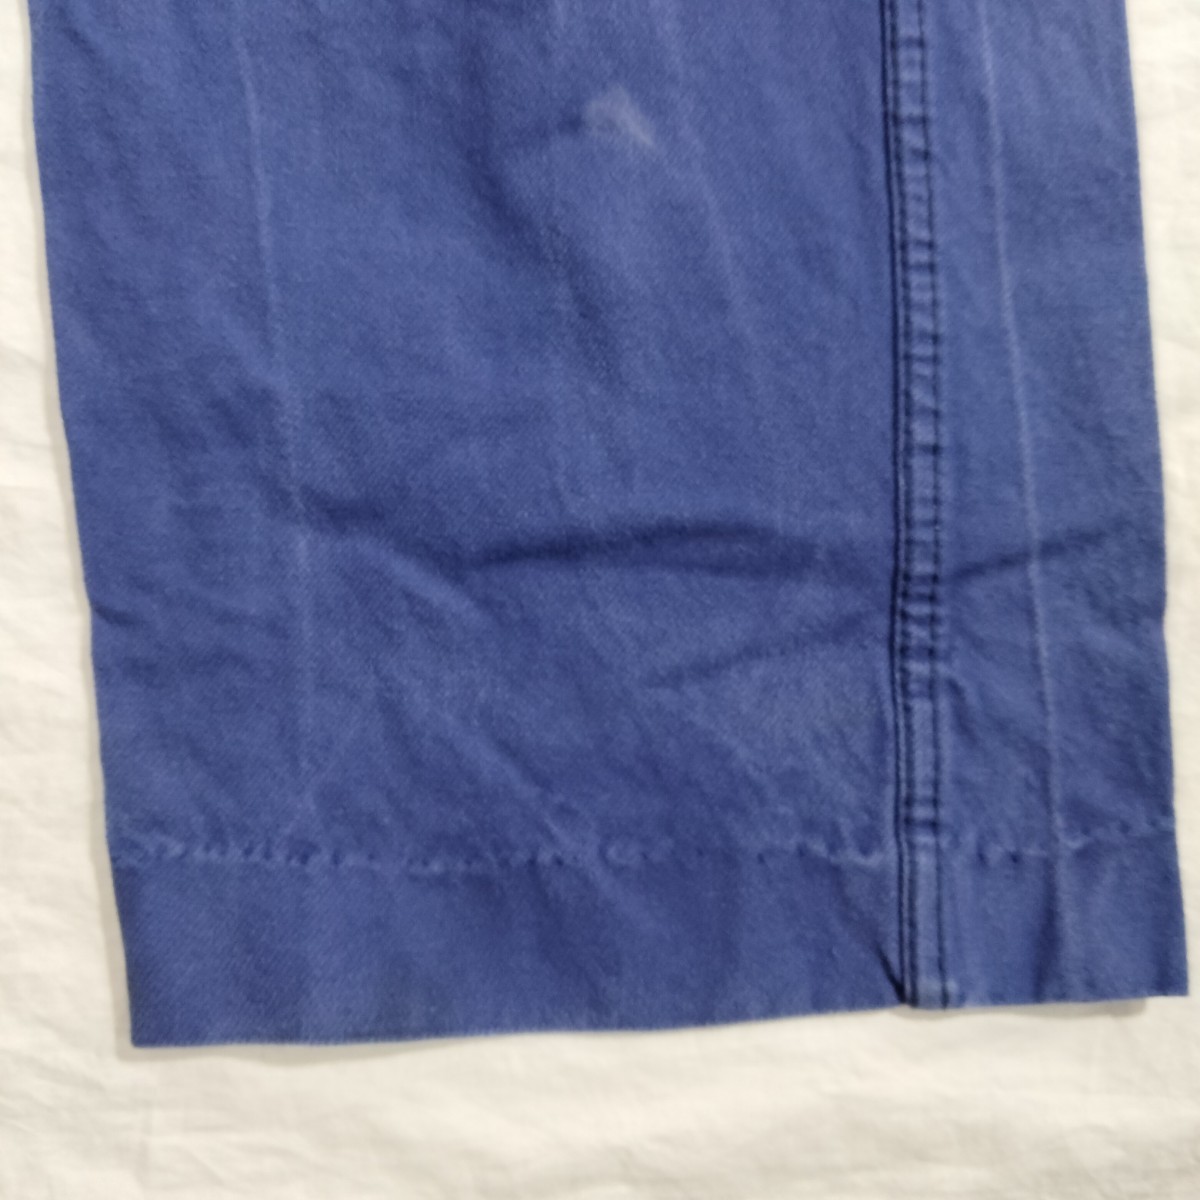 euro work pant ユーロ コットン ツイル ブルー blue パンツ ボタンフライ ユーロワーク vintage 52 38x27 fade 色落ち_画像5